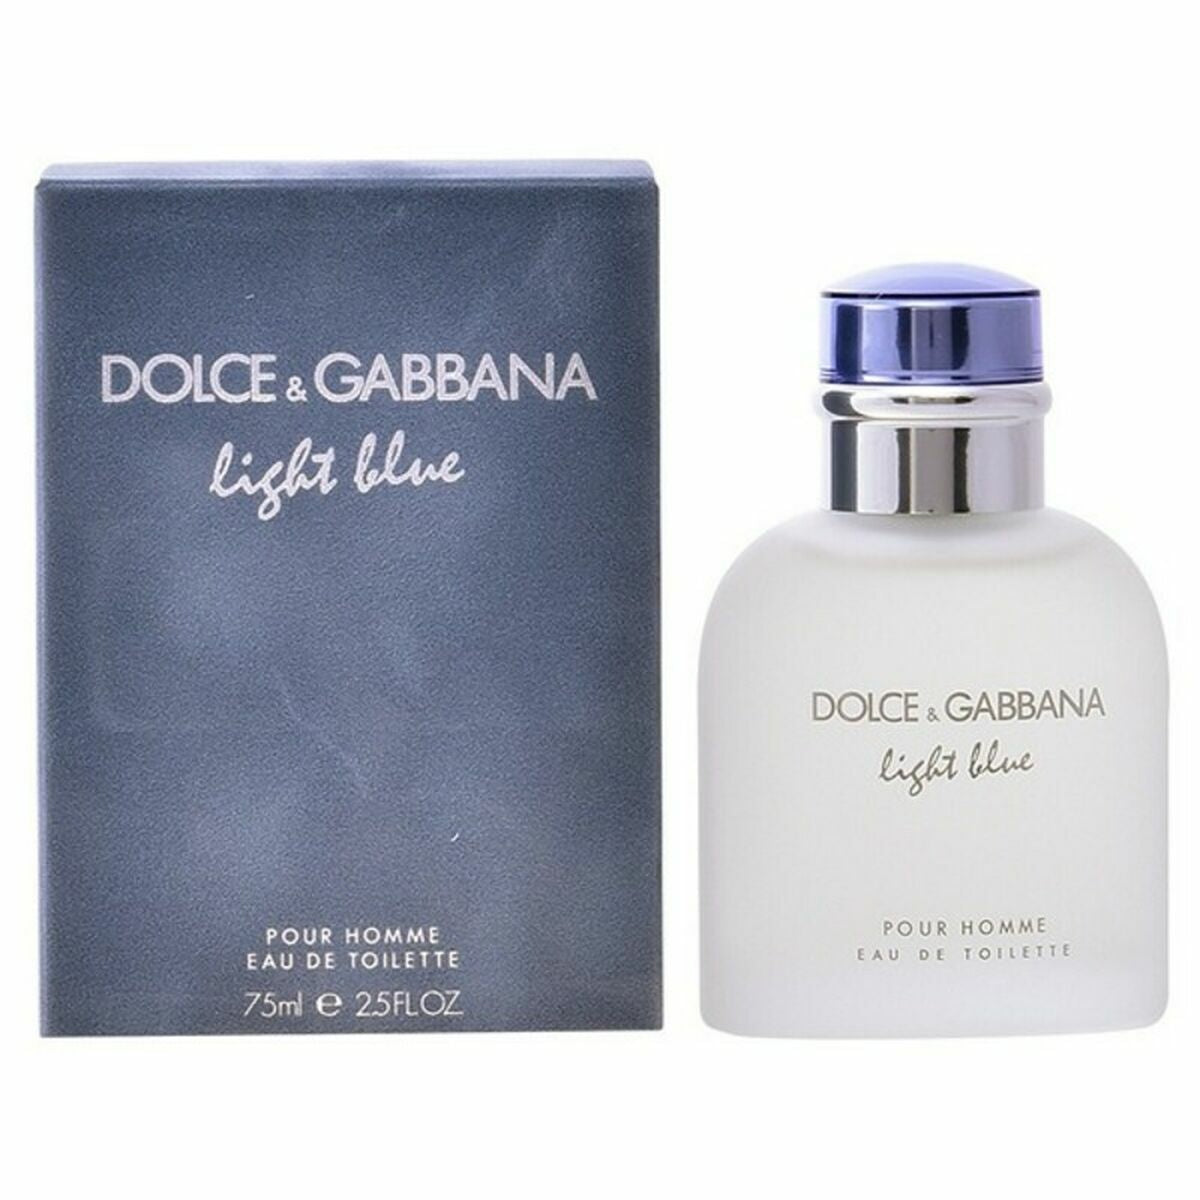 Άρωμα ανδρών Dolce & Gabbana Edt Light Blue Pour Homme 125 ml